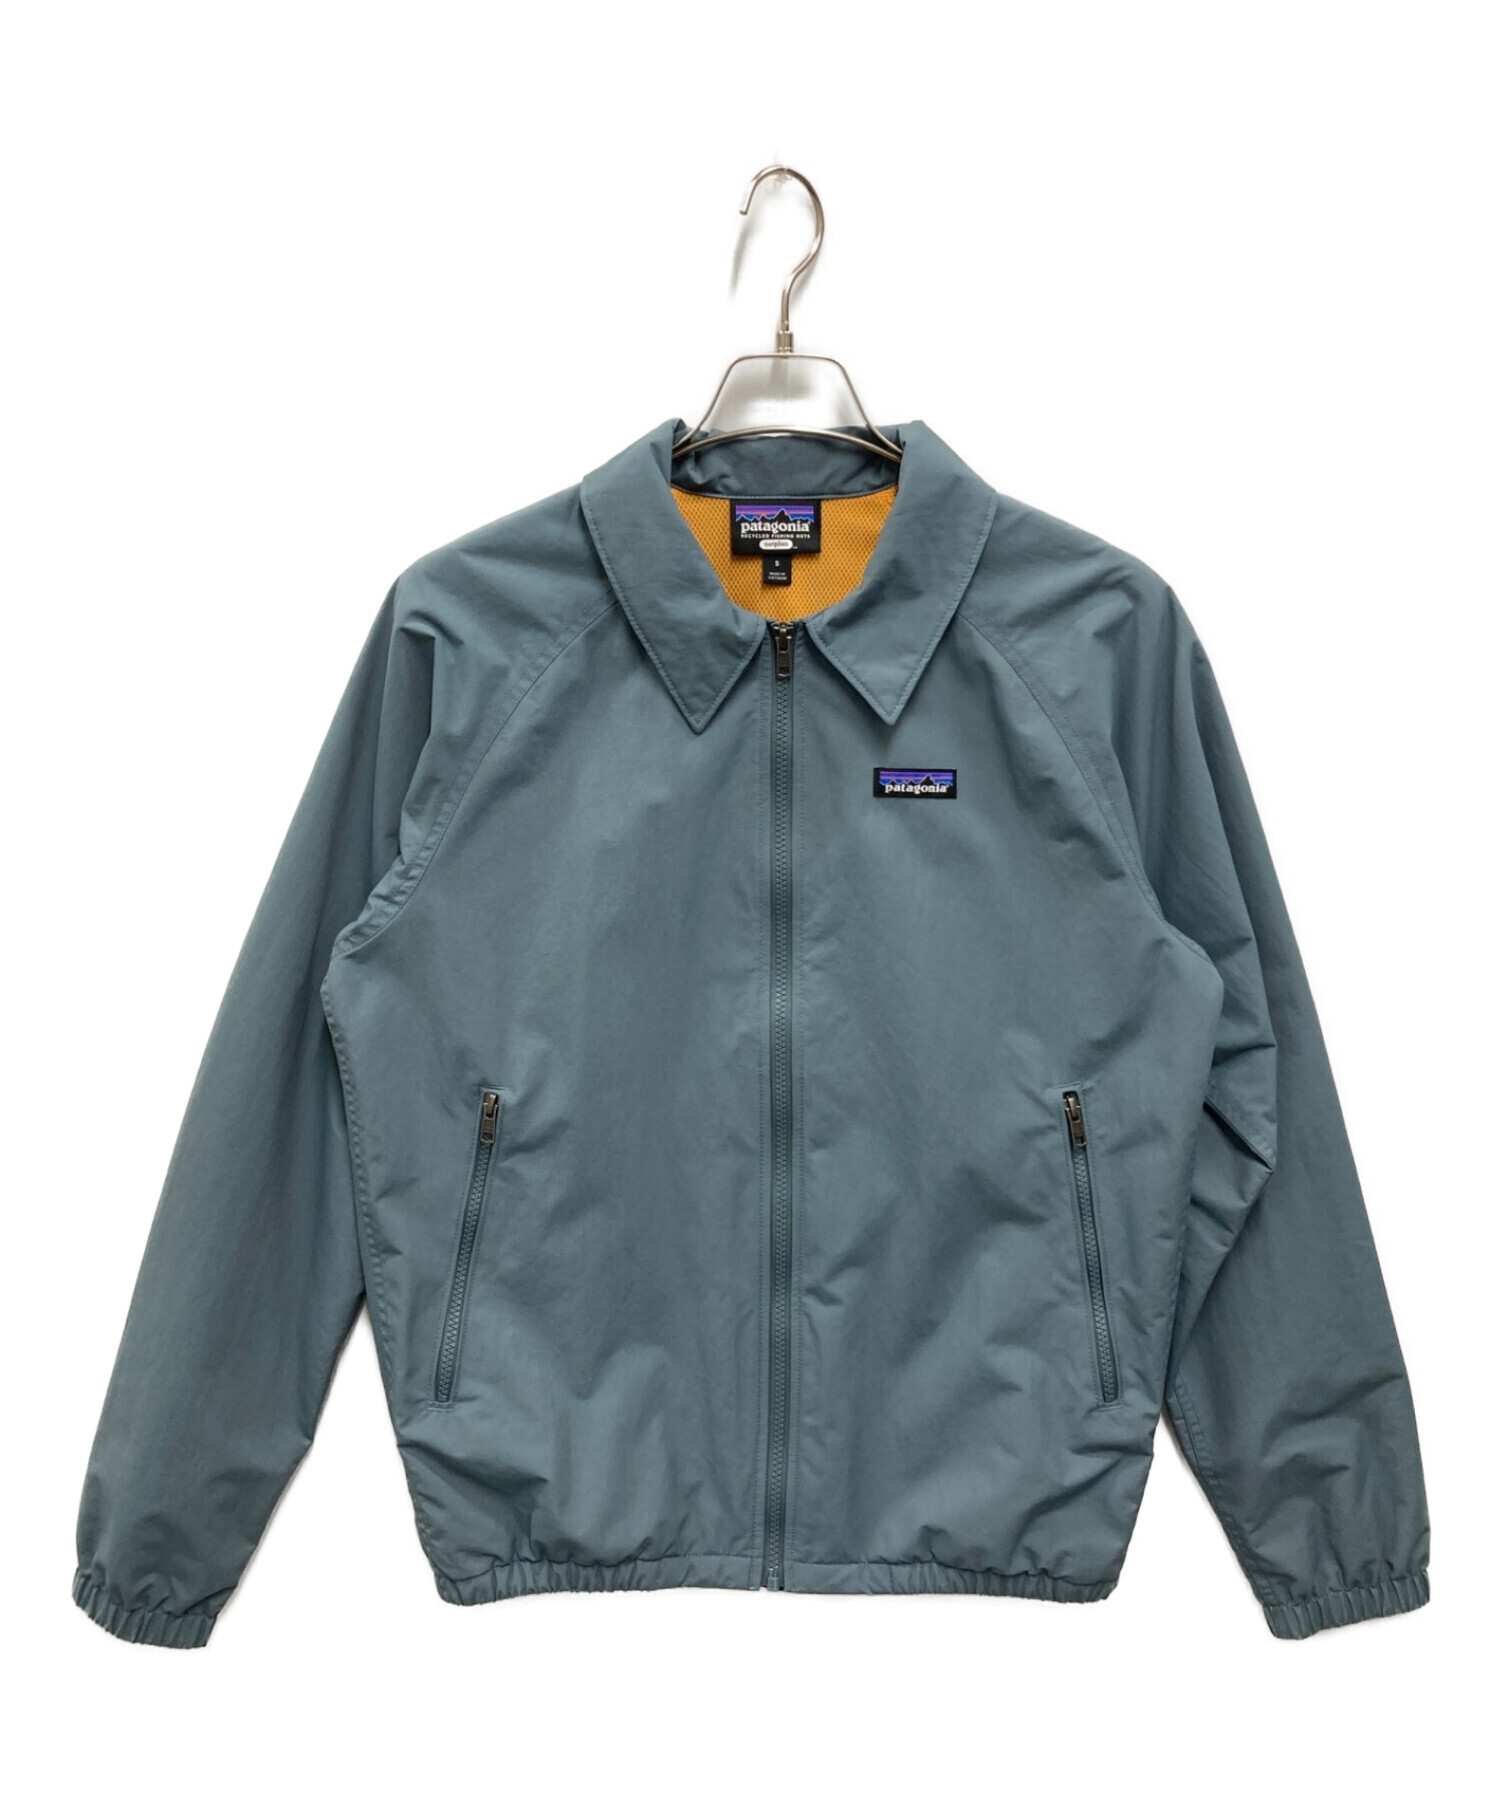 Patagonia (パタゴニア) バギーズジャケット グレー サイズ:S